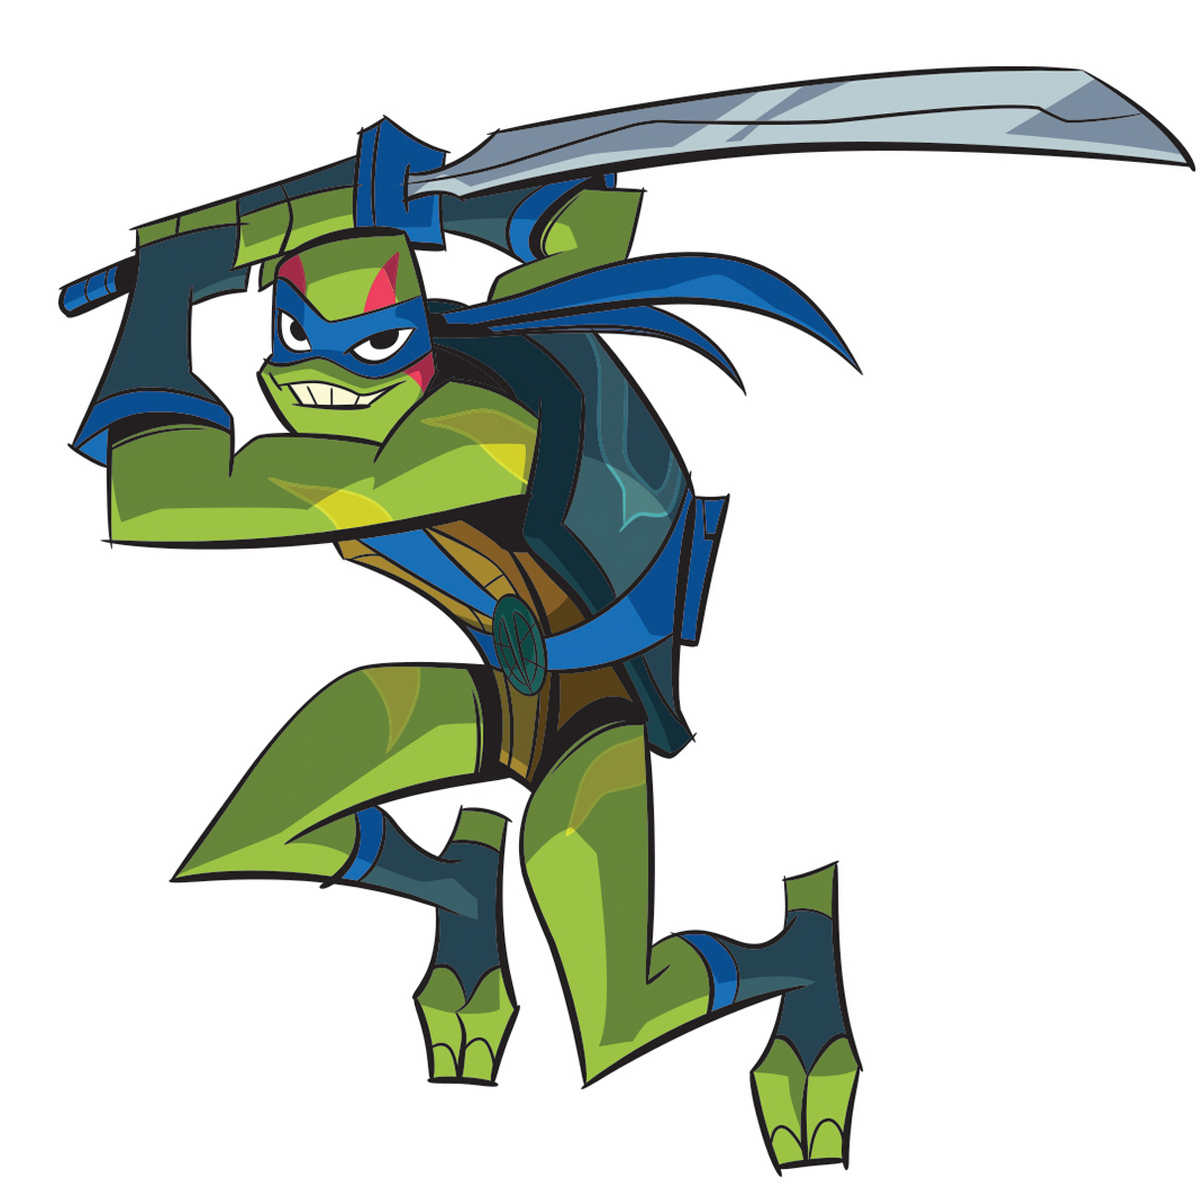 Cuál es la Tortuga Ninja más fuerte? Leonardo responde al dilema 39 años  después - Vandal Random